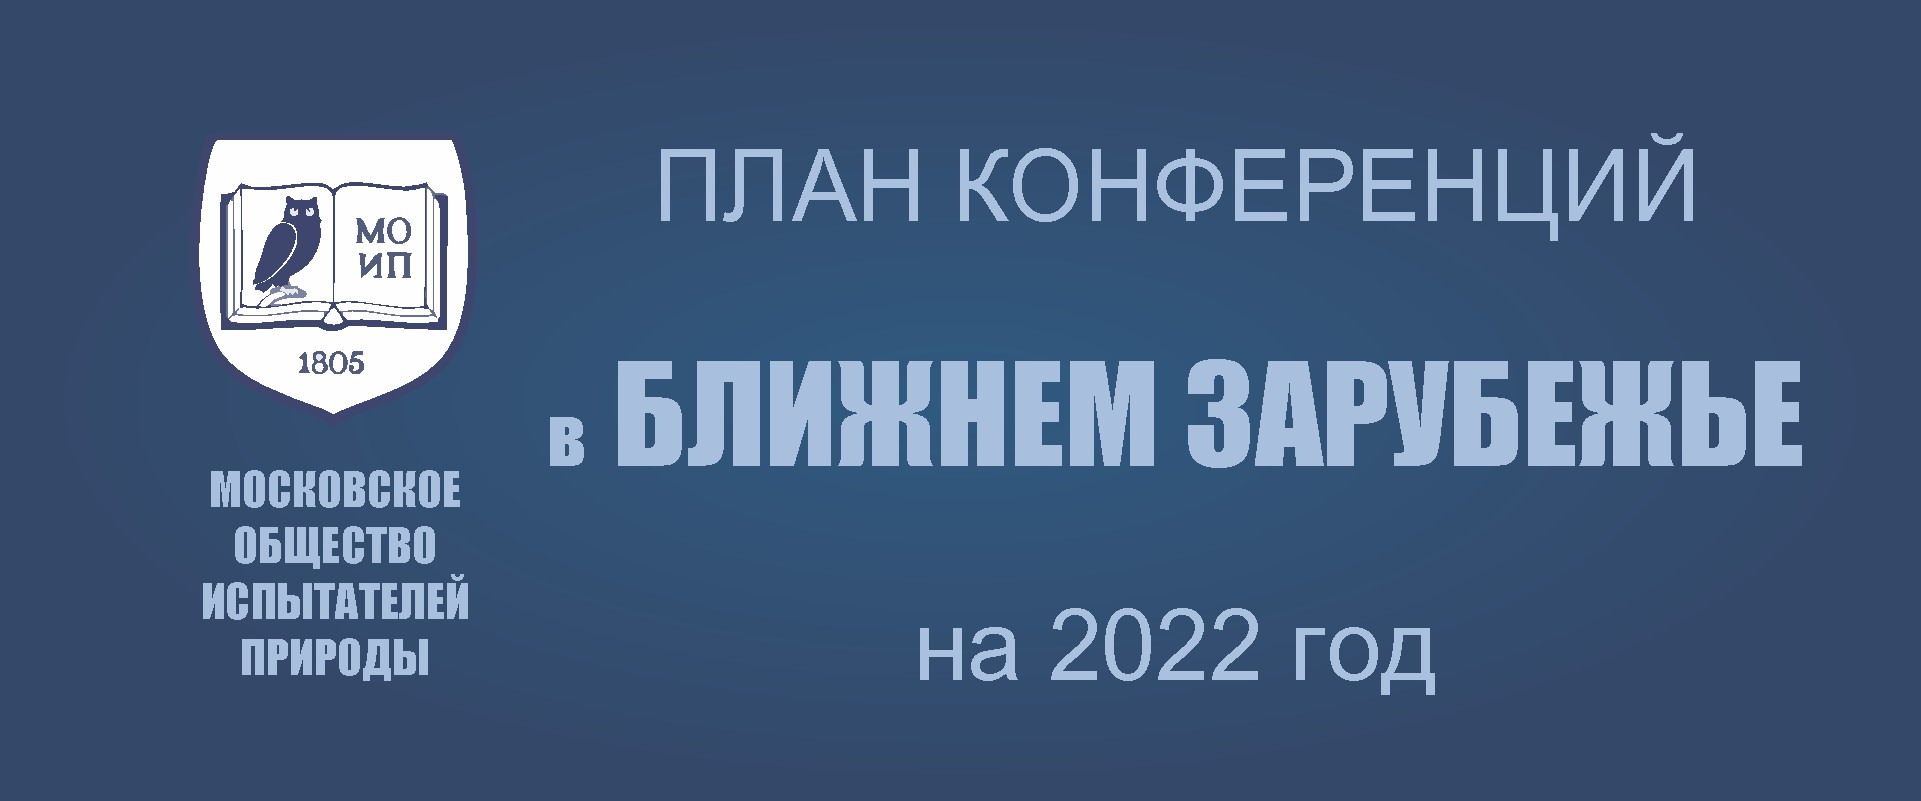 ПРЕДСТОЯЩИЕ КОНФЕРЕНЦИИ В БЛИЖНЕМ ЗАРУБЕЖЬЕ в 2022 году